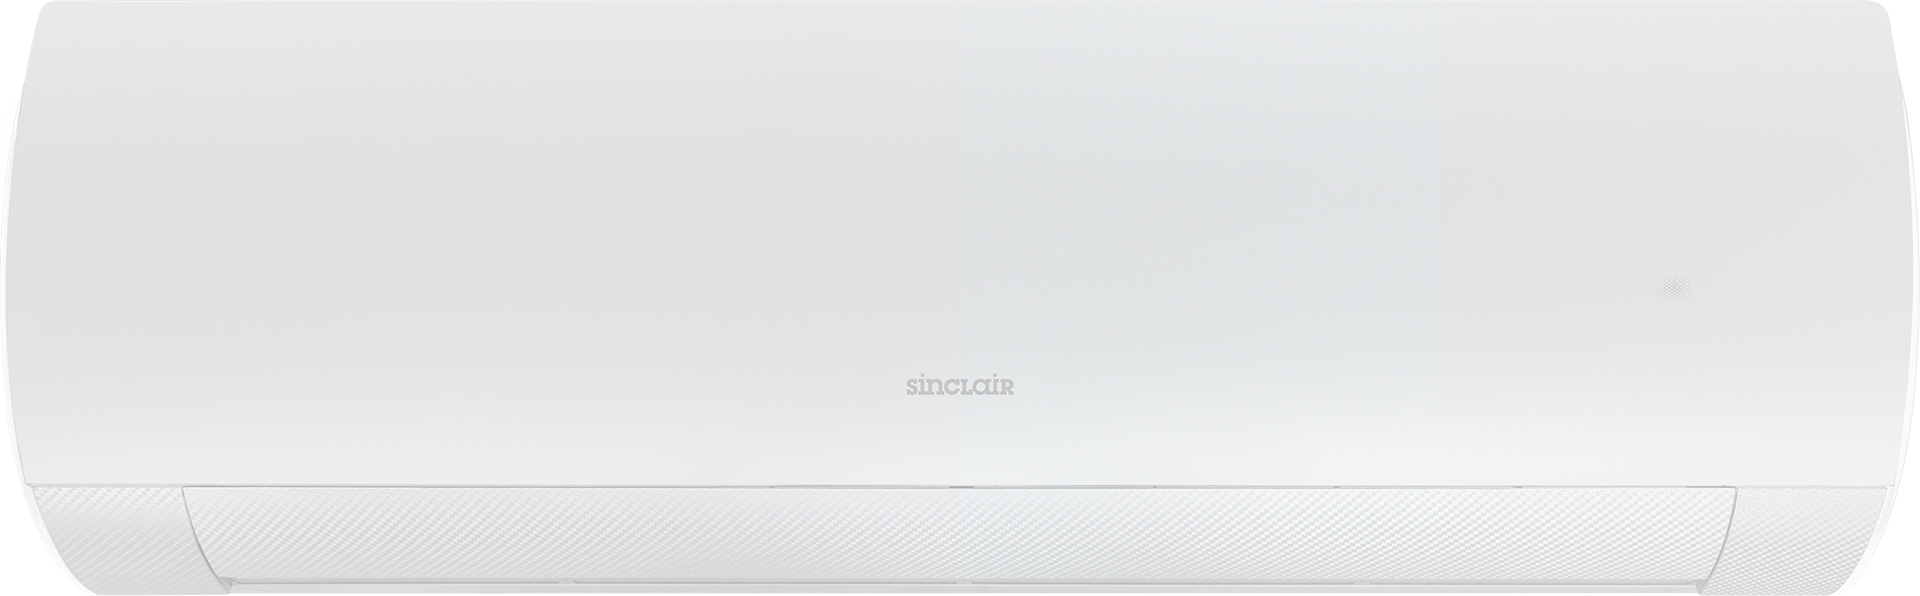 7210126 Sinclair